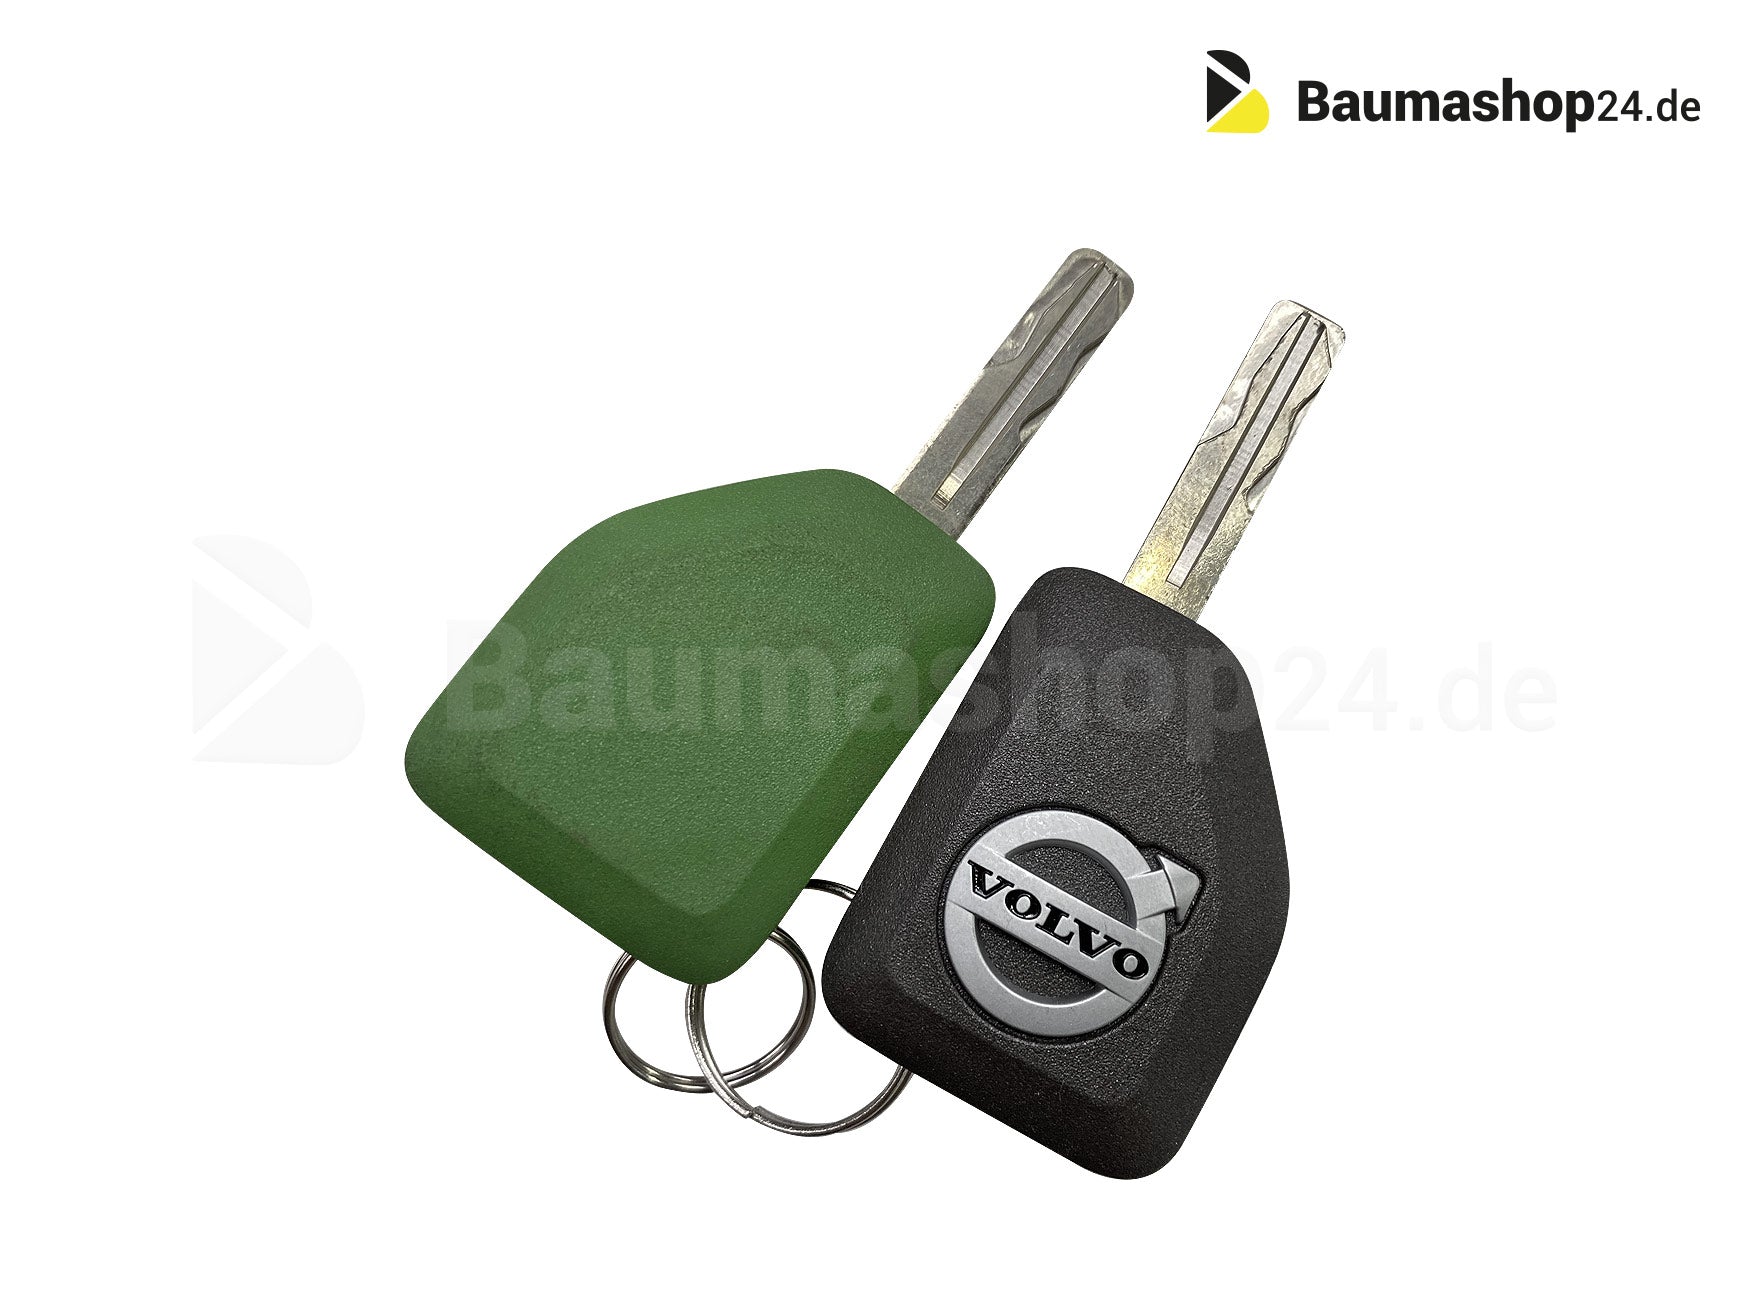 Volvo Bagger Ersatzschlüssel – Baumashop24